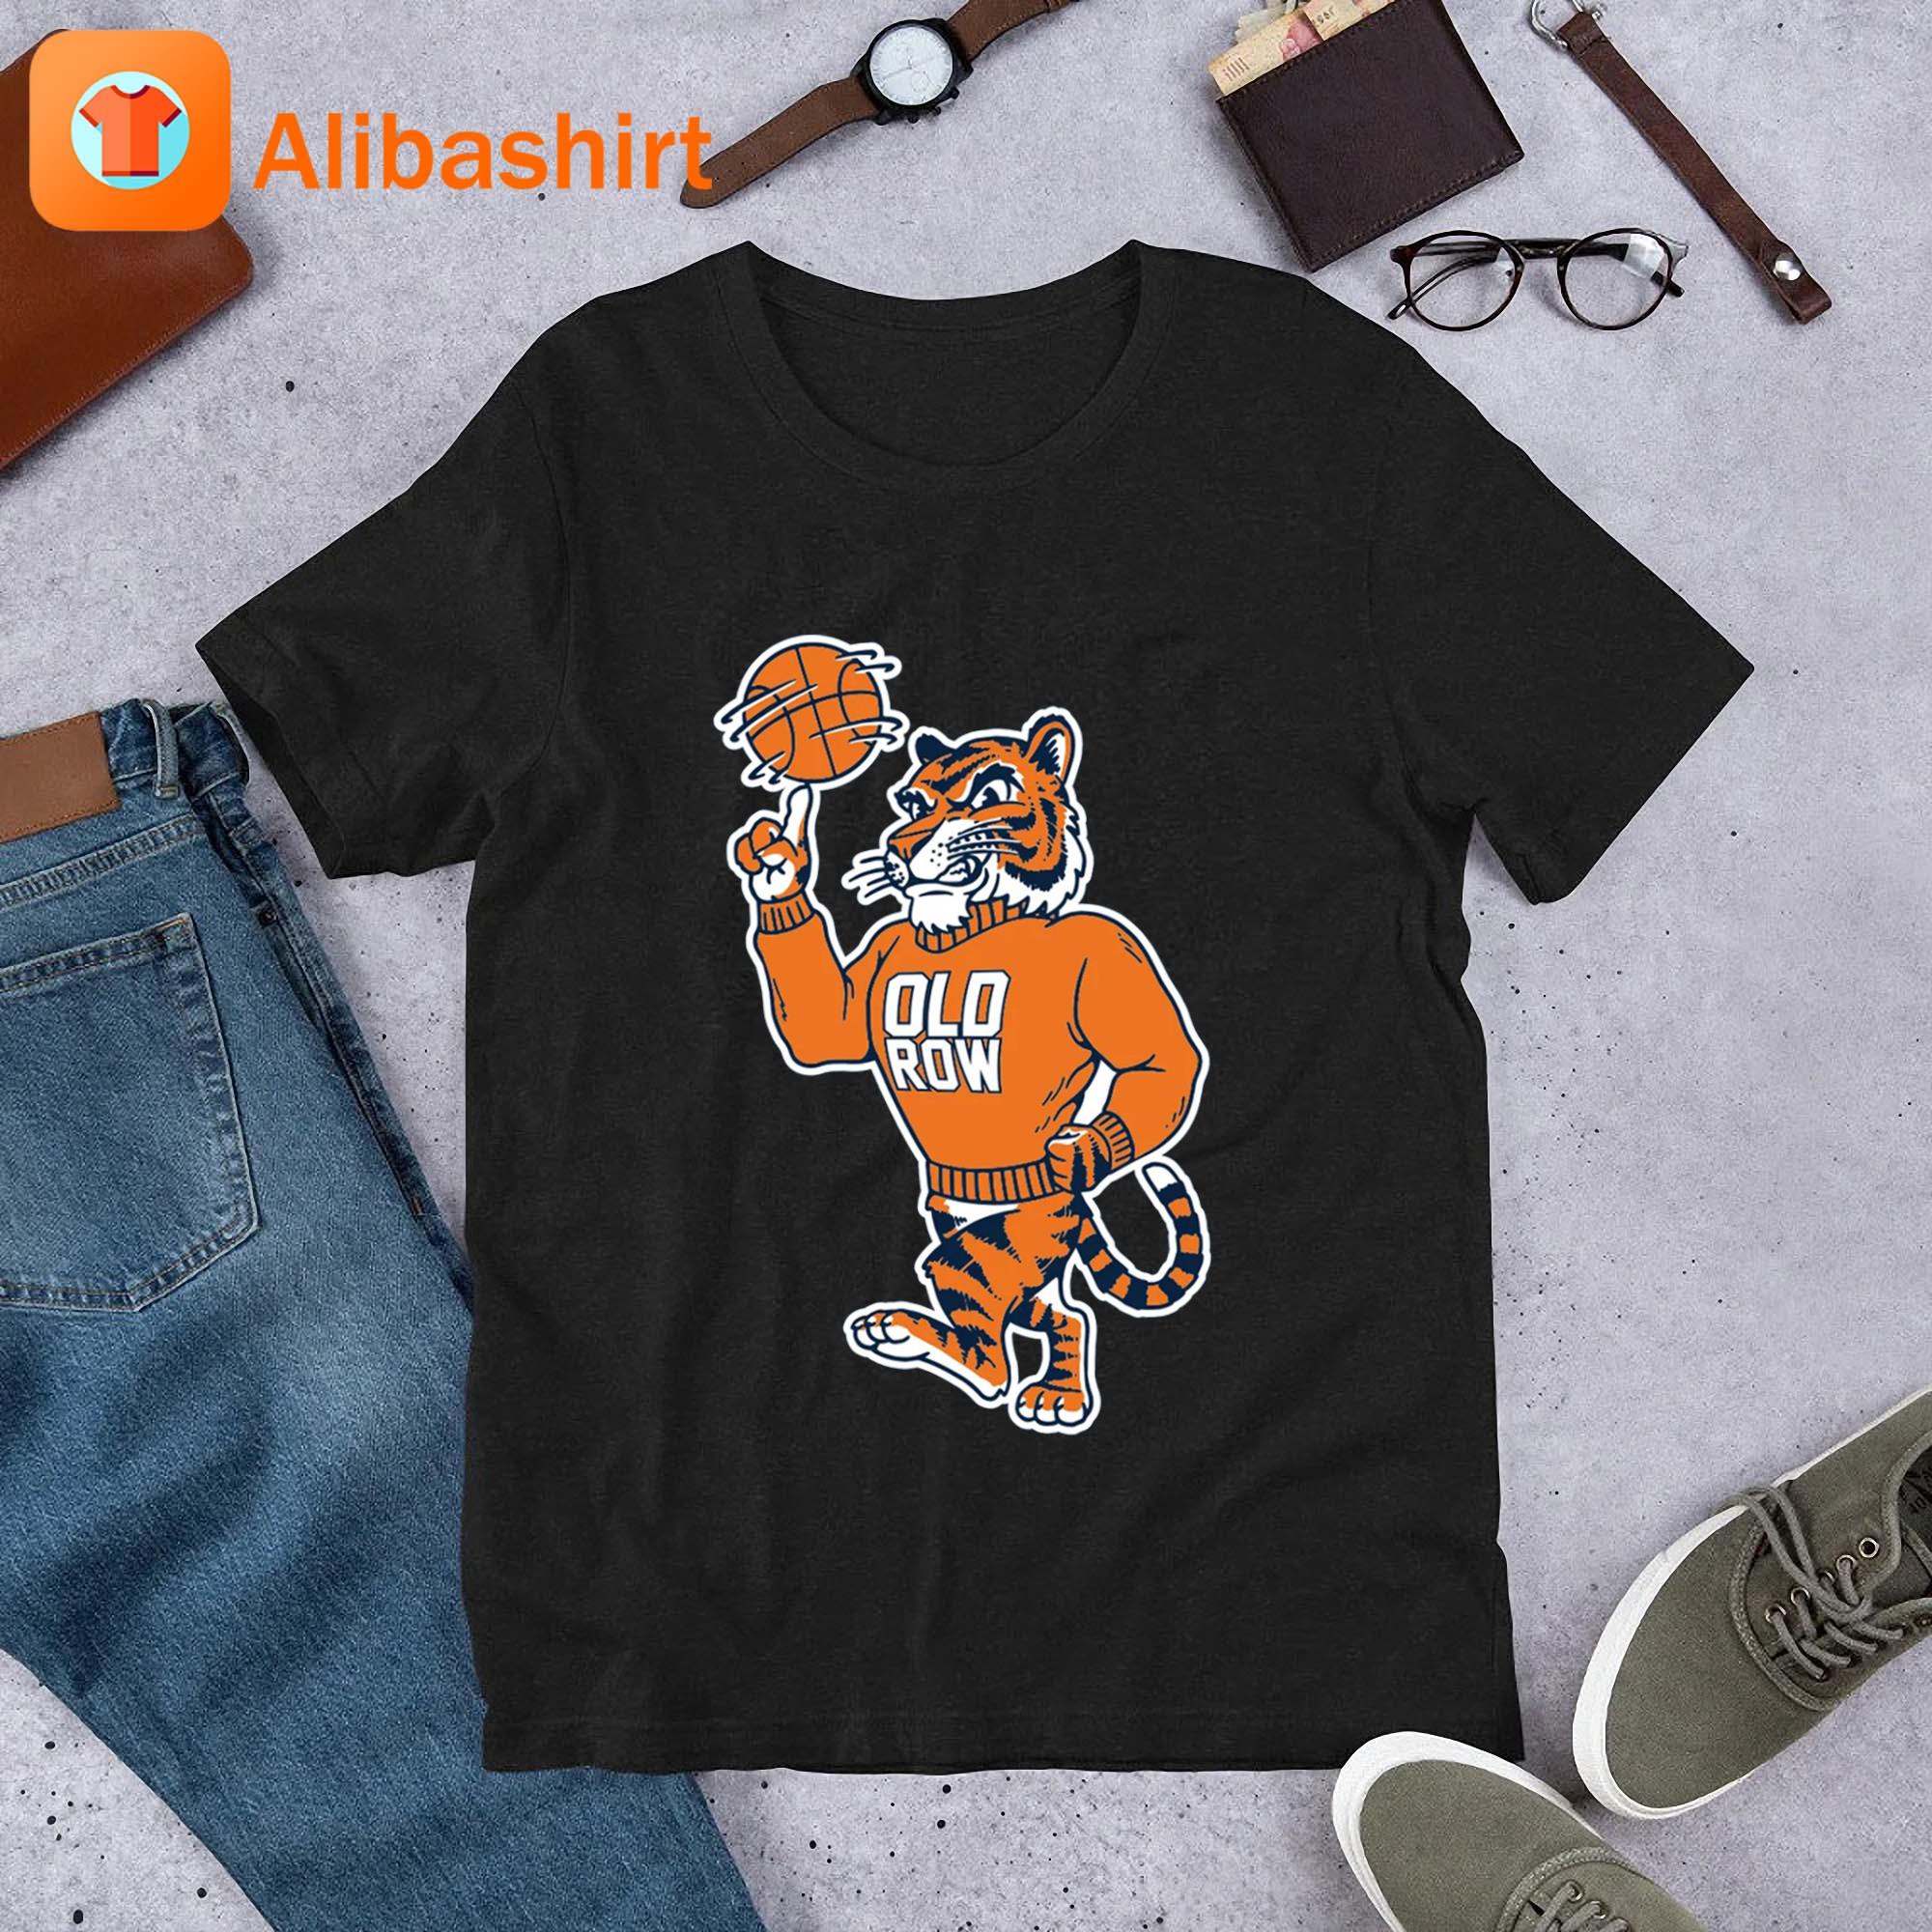 The Tiger Basketball Shirt